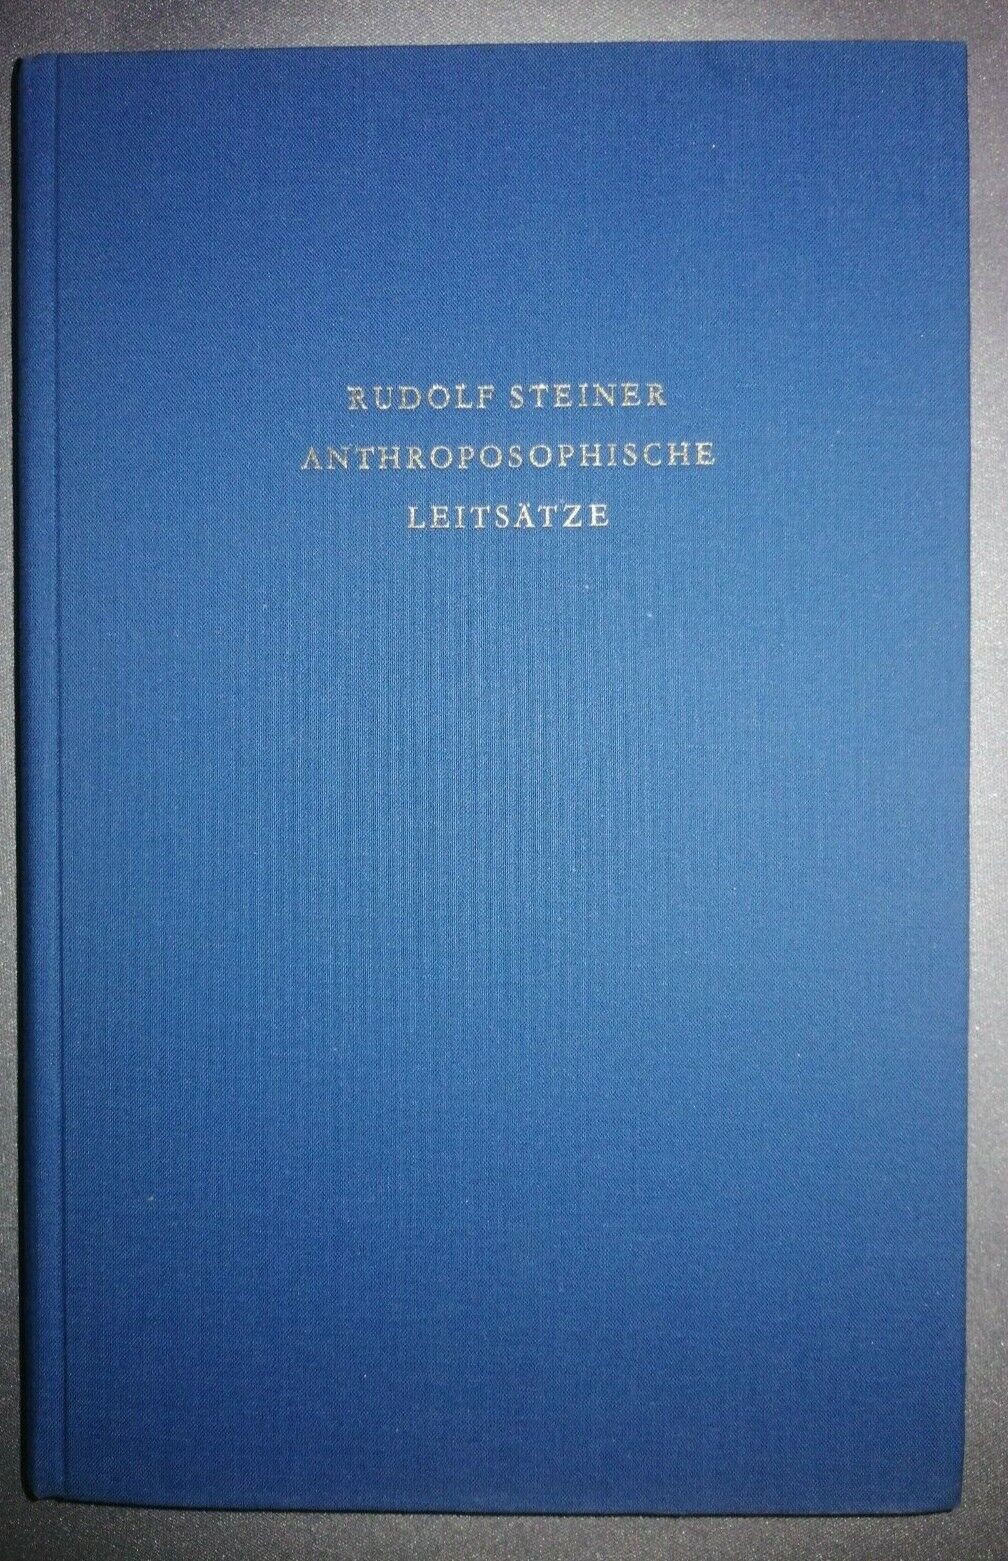 Rudolf Steiner - Anthroposophische Leitsätze, Erkenntnisweg der Anthroposophie